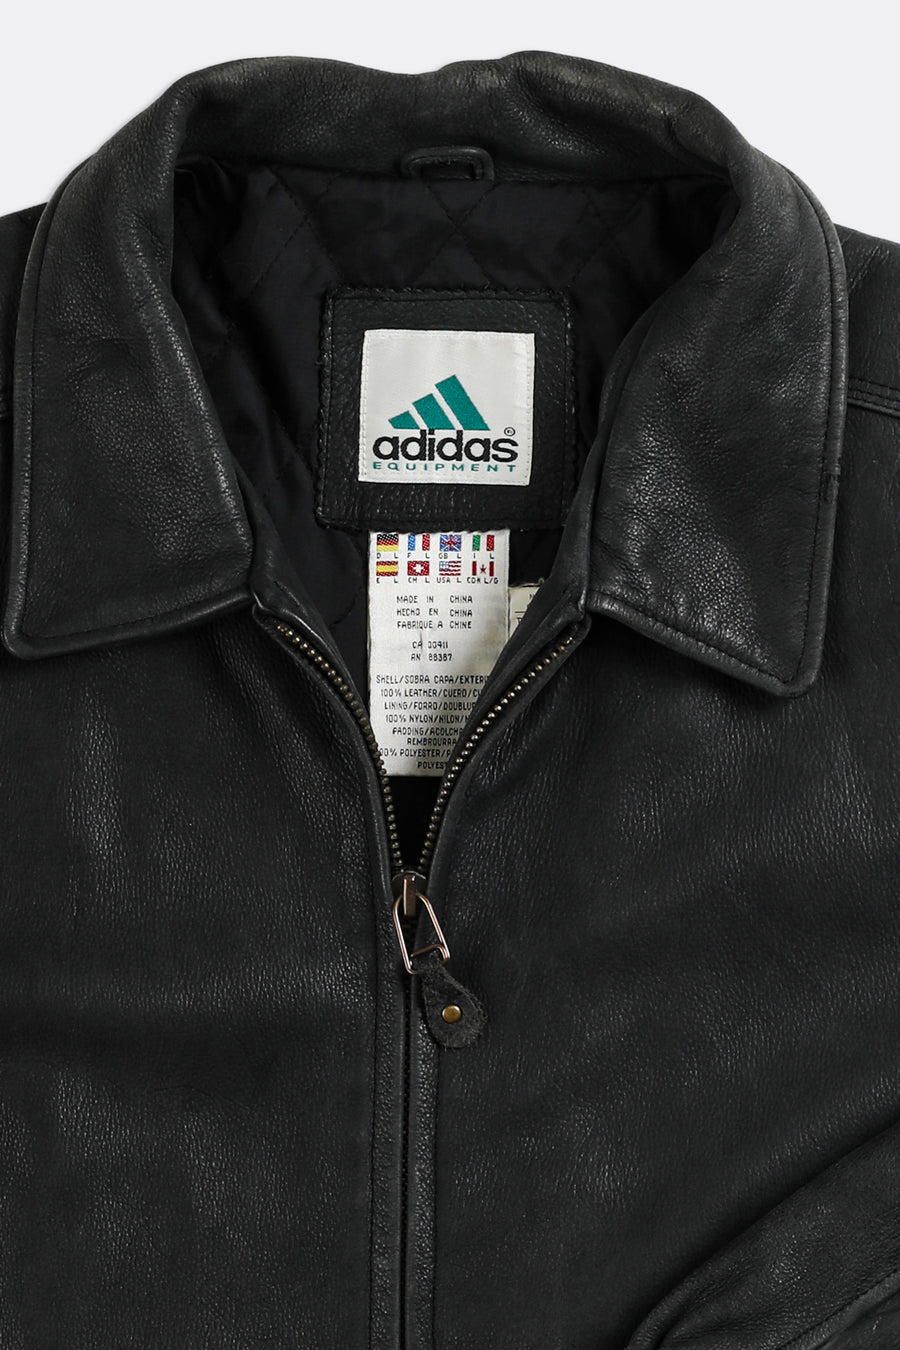 Vintage Adidas Leather Jacket